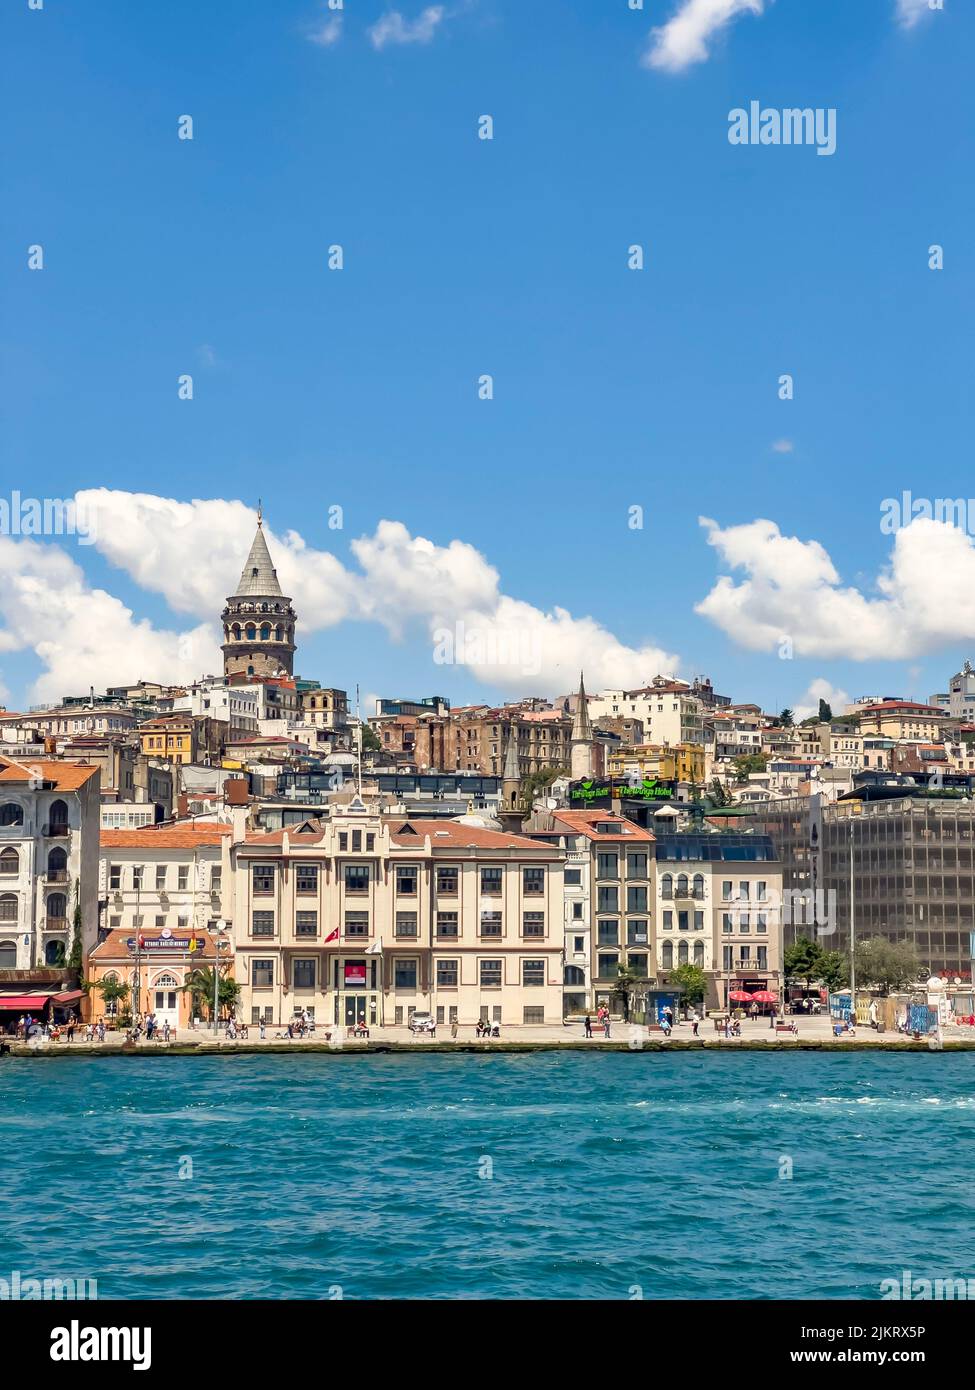 Tour de Galata et nouveau port de croisière, vue de la mer par une journée ensoleillée. Belle ville ancienne d'Istanbul à la lumière du jour. Ciel bleu vertical. Banque D'Images